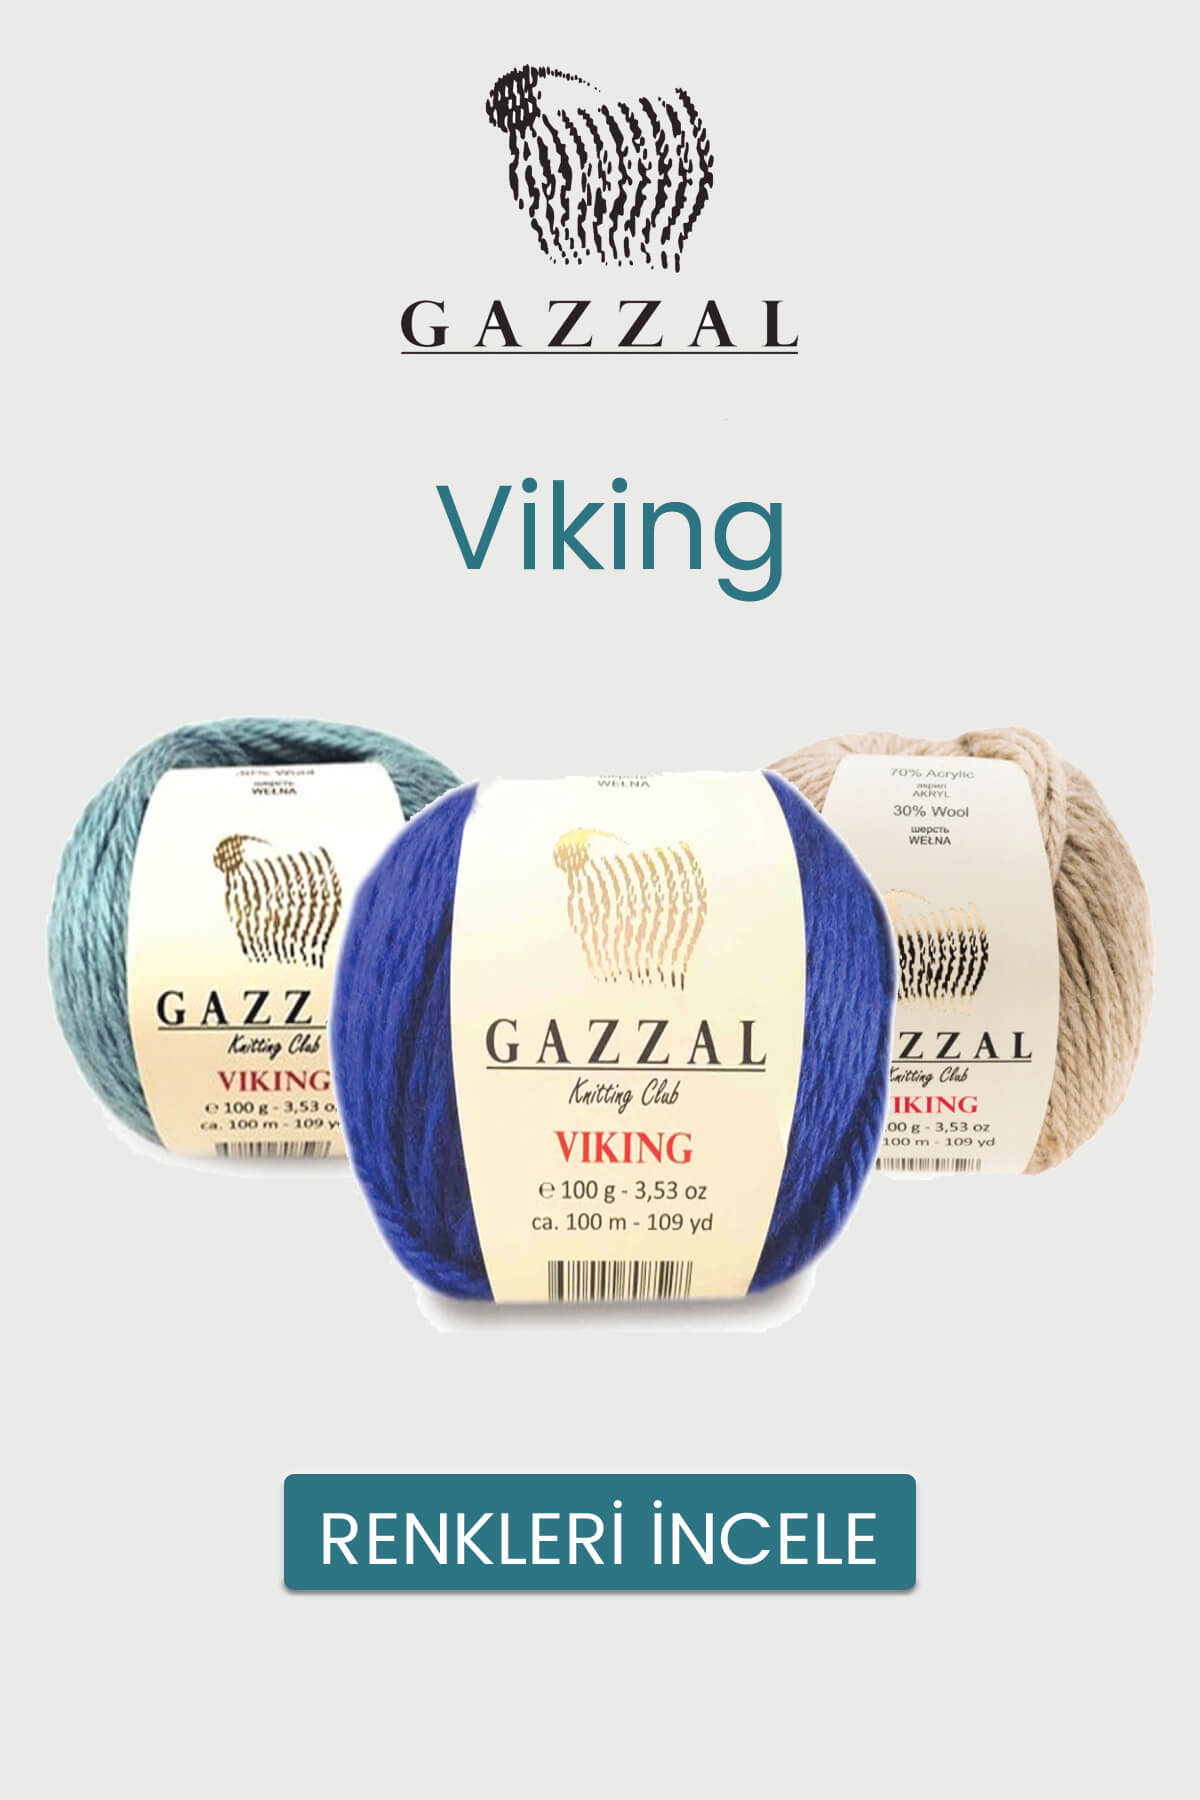 gazzal-viking-tekstilland